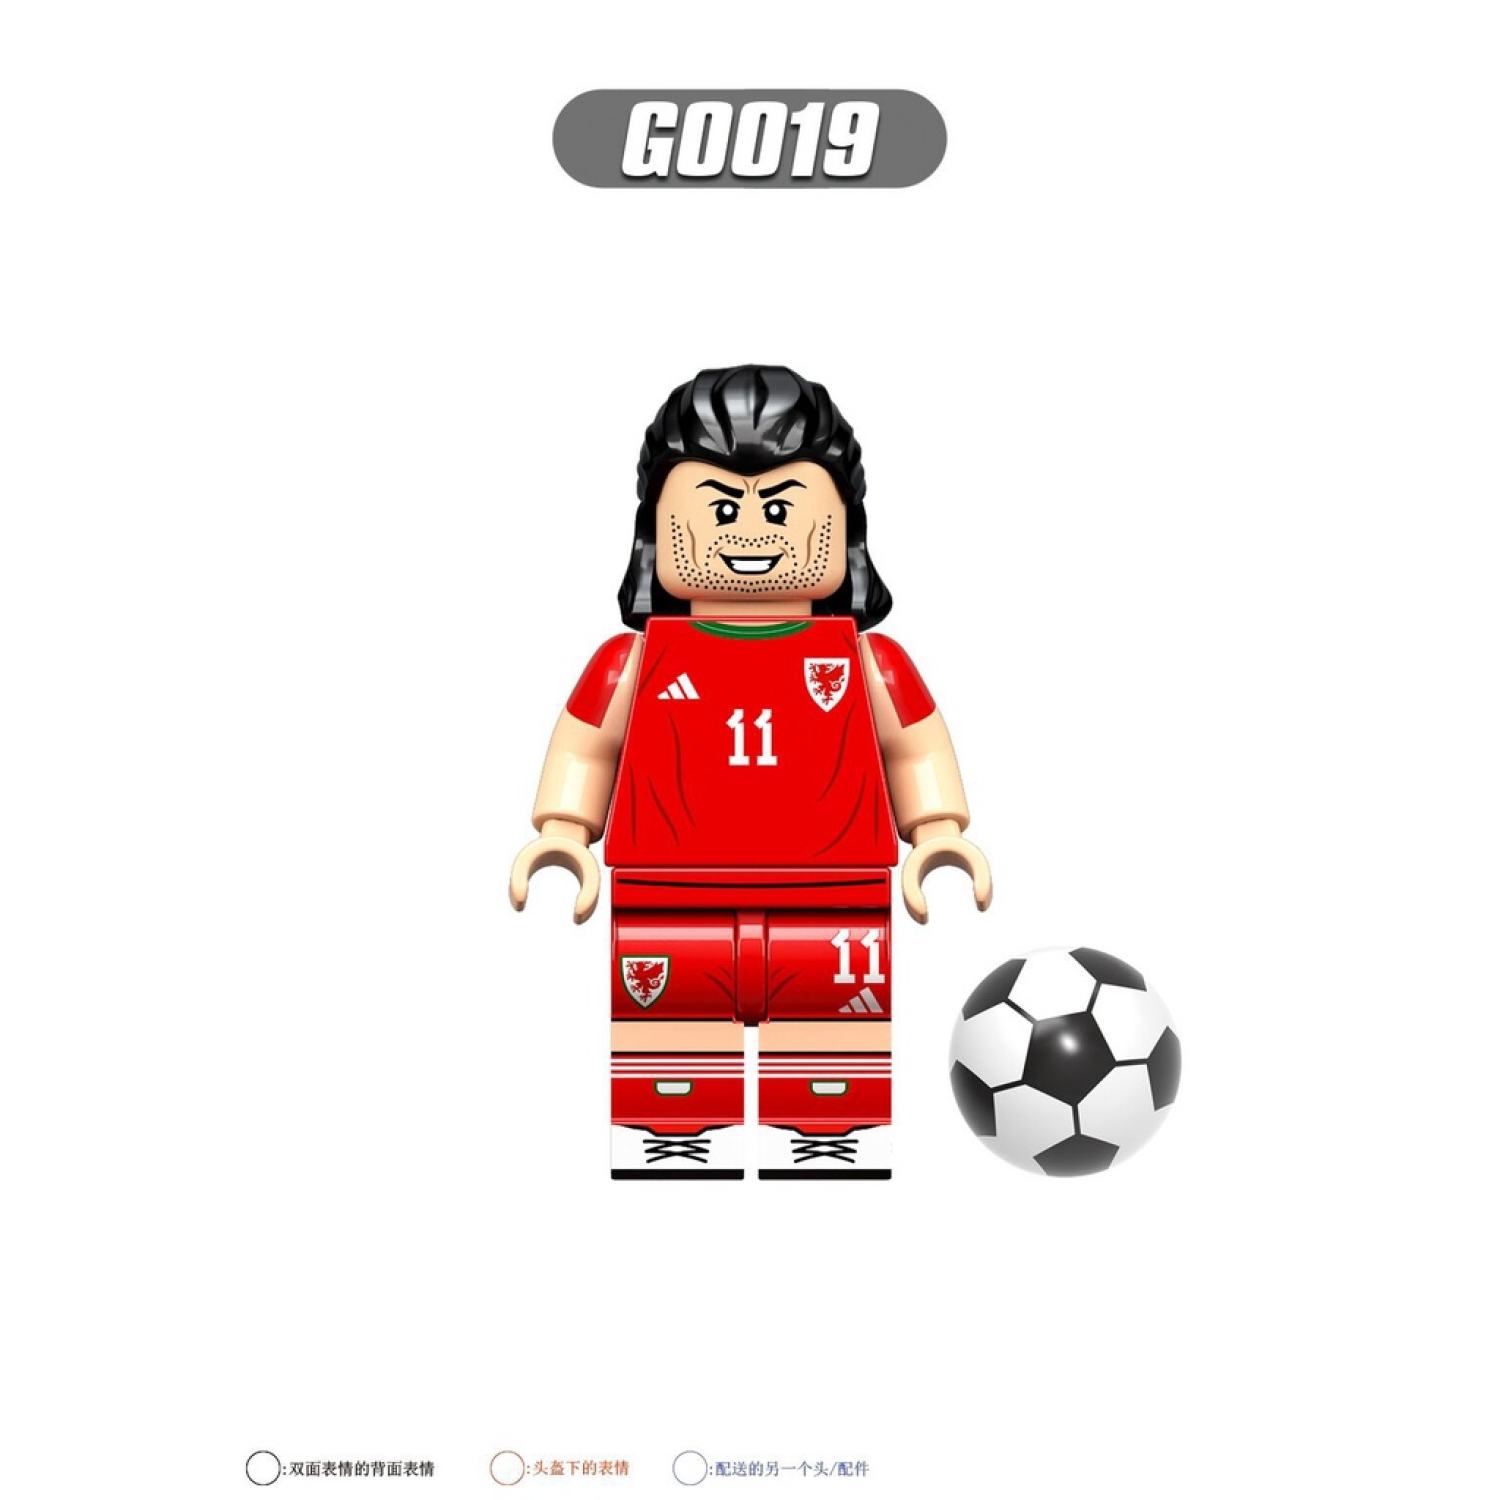 minifigures các mẫu nhân vật cầu thủ bóng đá nổi tiếng messi ronaldo g0103 6